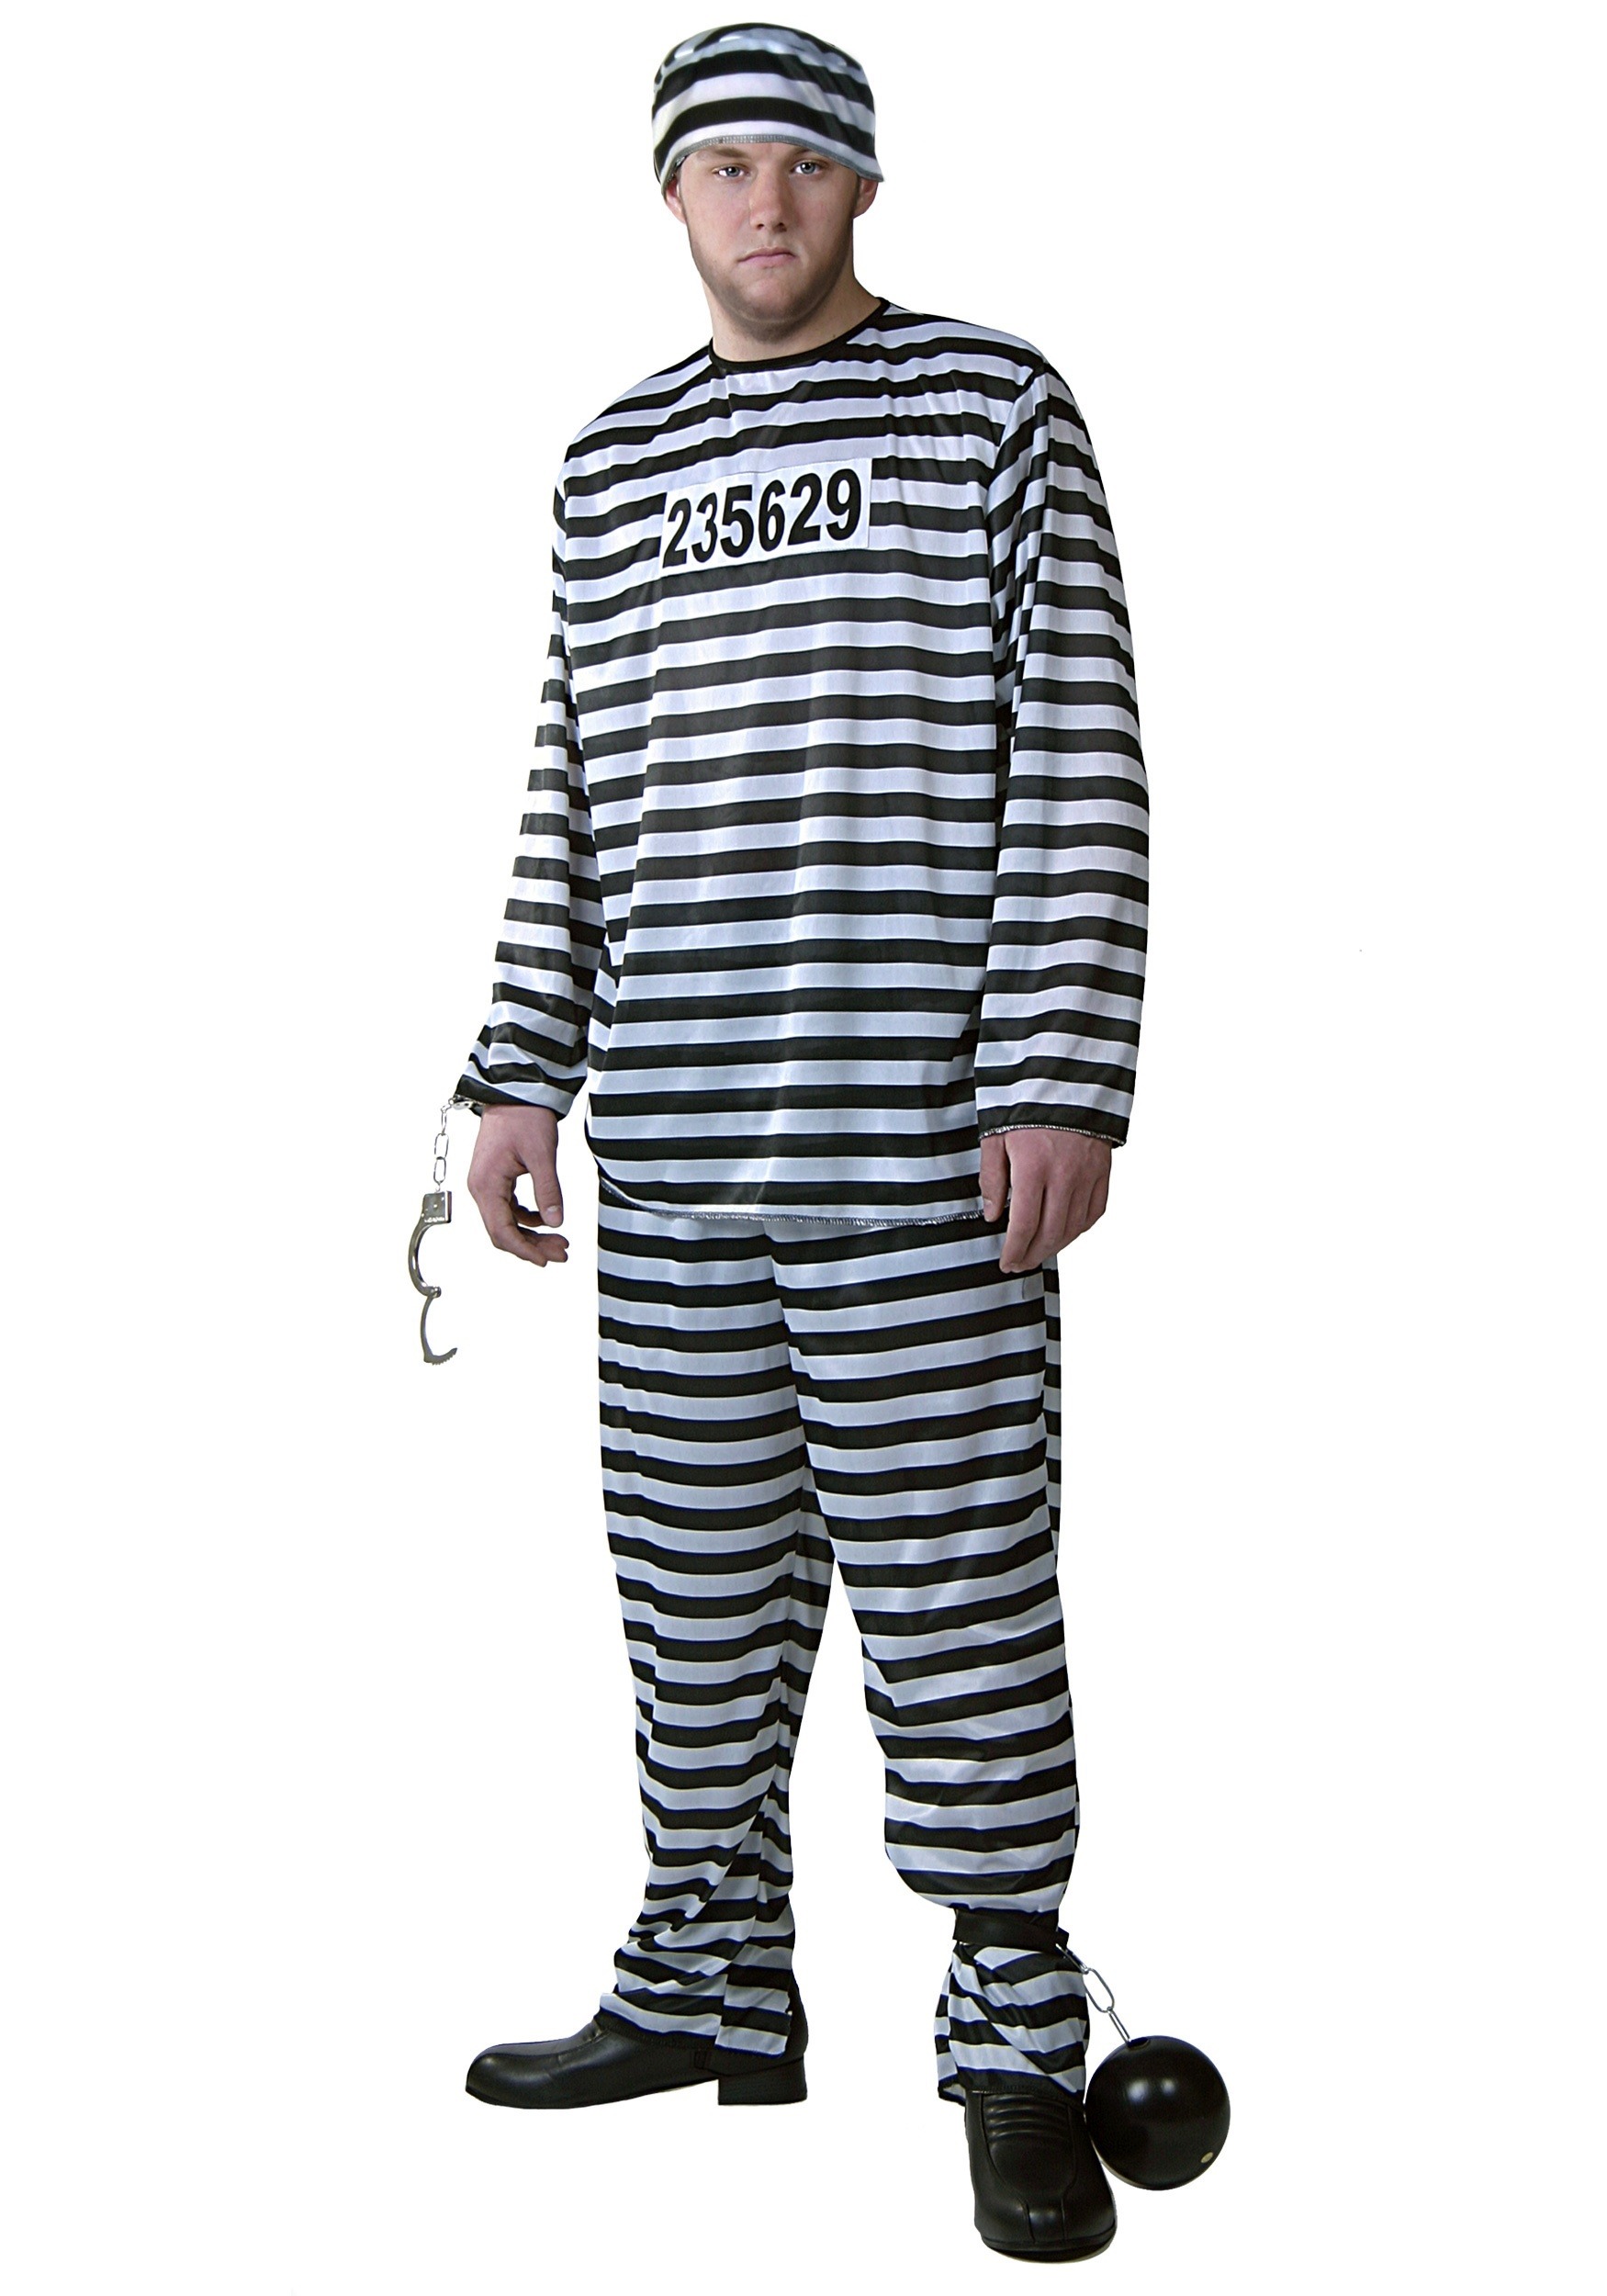 Plus Size Men's Prisoner Costume - image 1 of 5